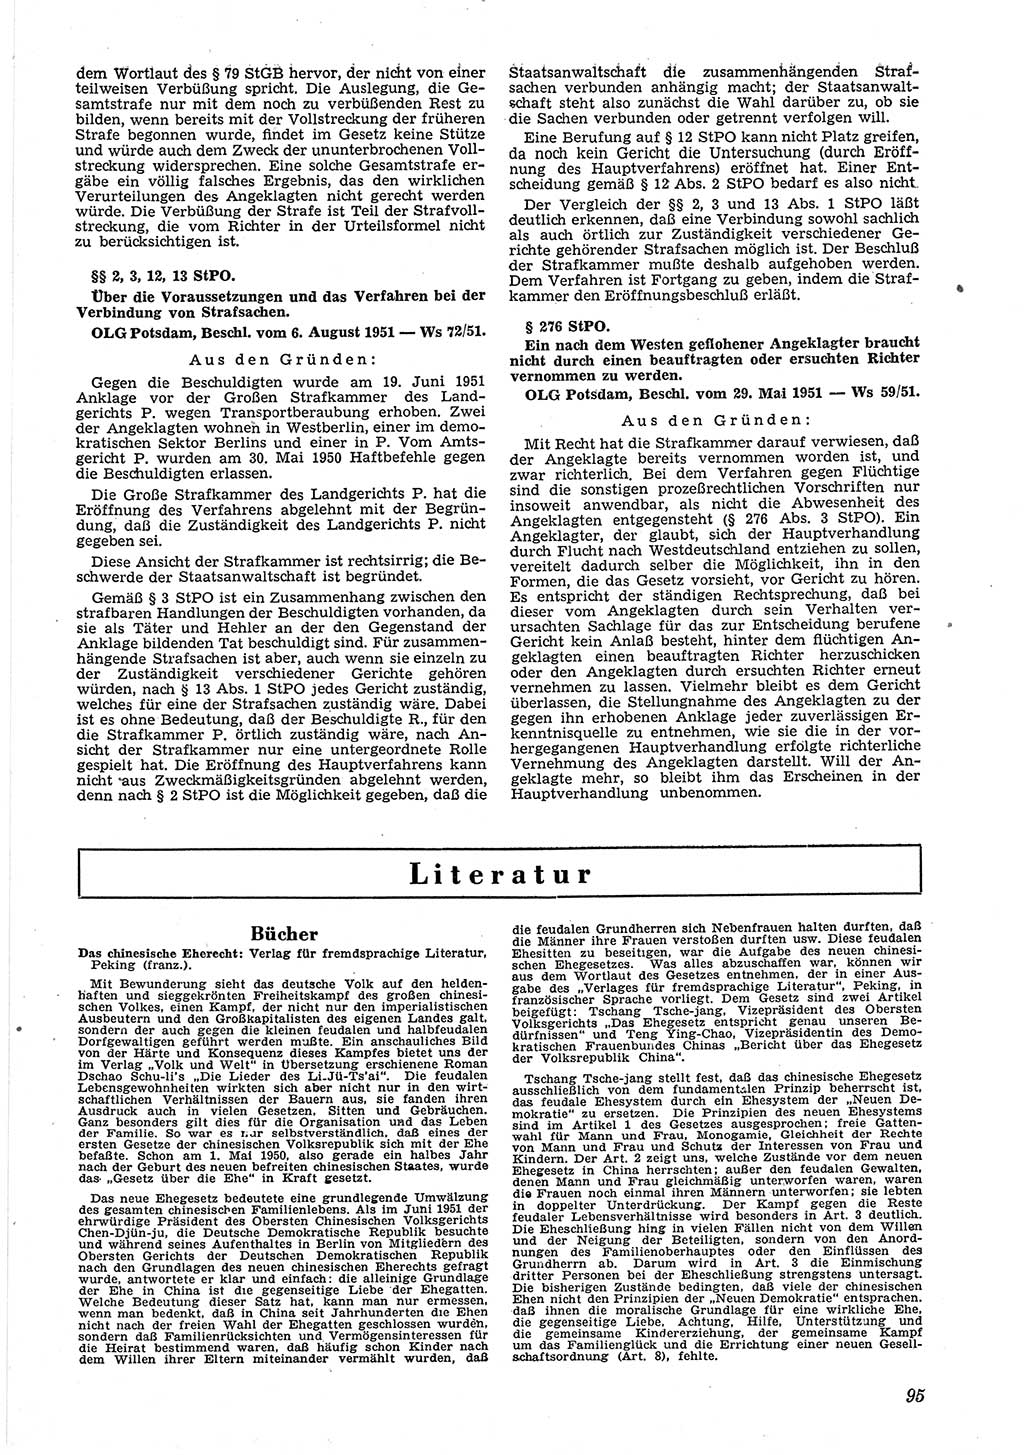 Neue Justiz (NJ), Zeitschrift für Recht und Rechtswissenschaft [Deutsche Demokratische Republik (DDR)], 6. Jahrgang 1952, Seite 95 (NJ DDR 1952, S. 95)